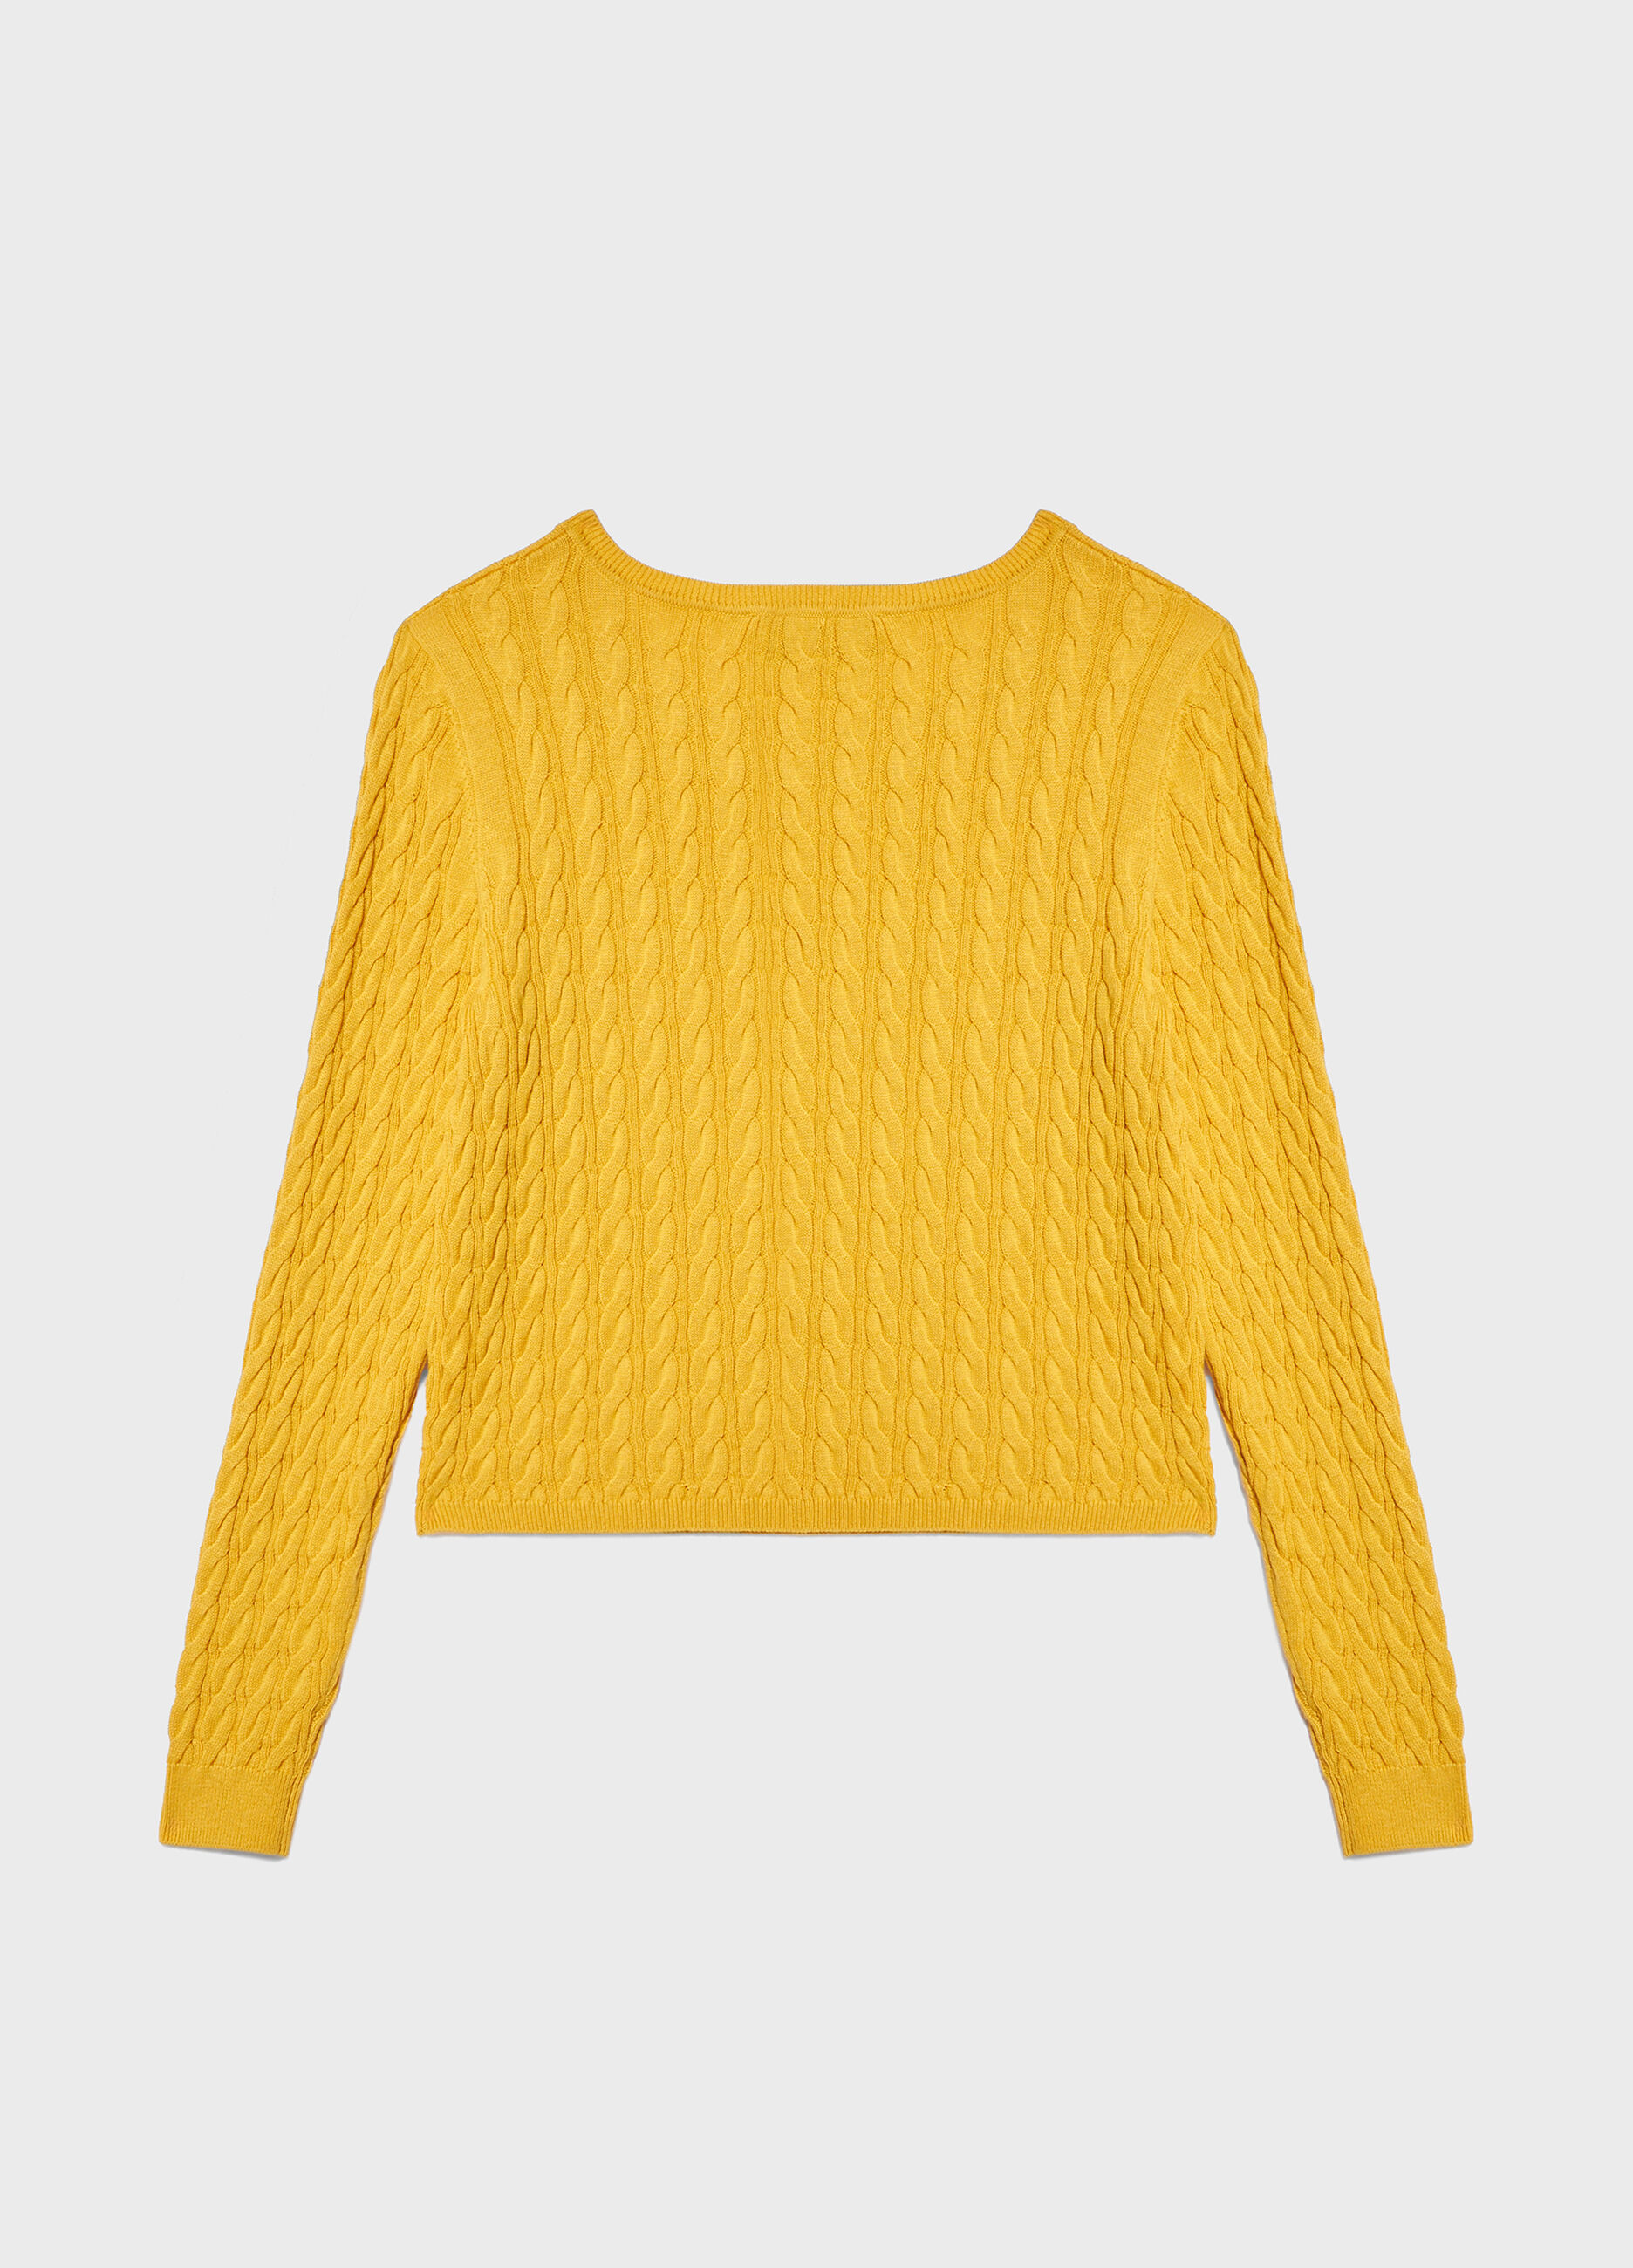 Maglione tricot in cotone e seta_5